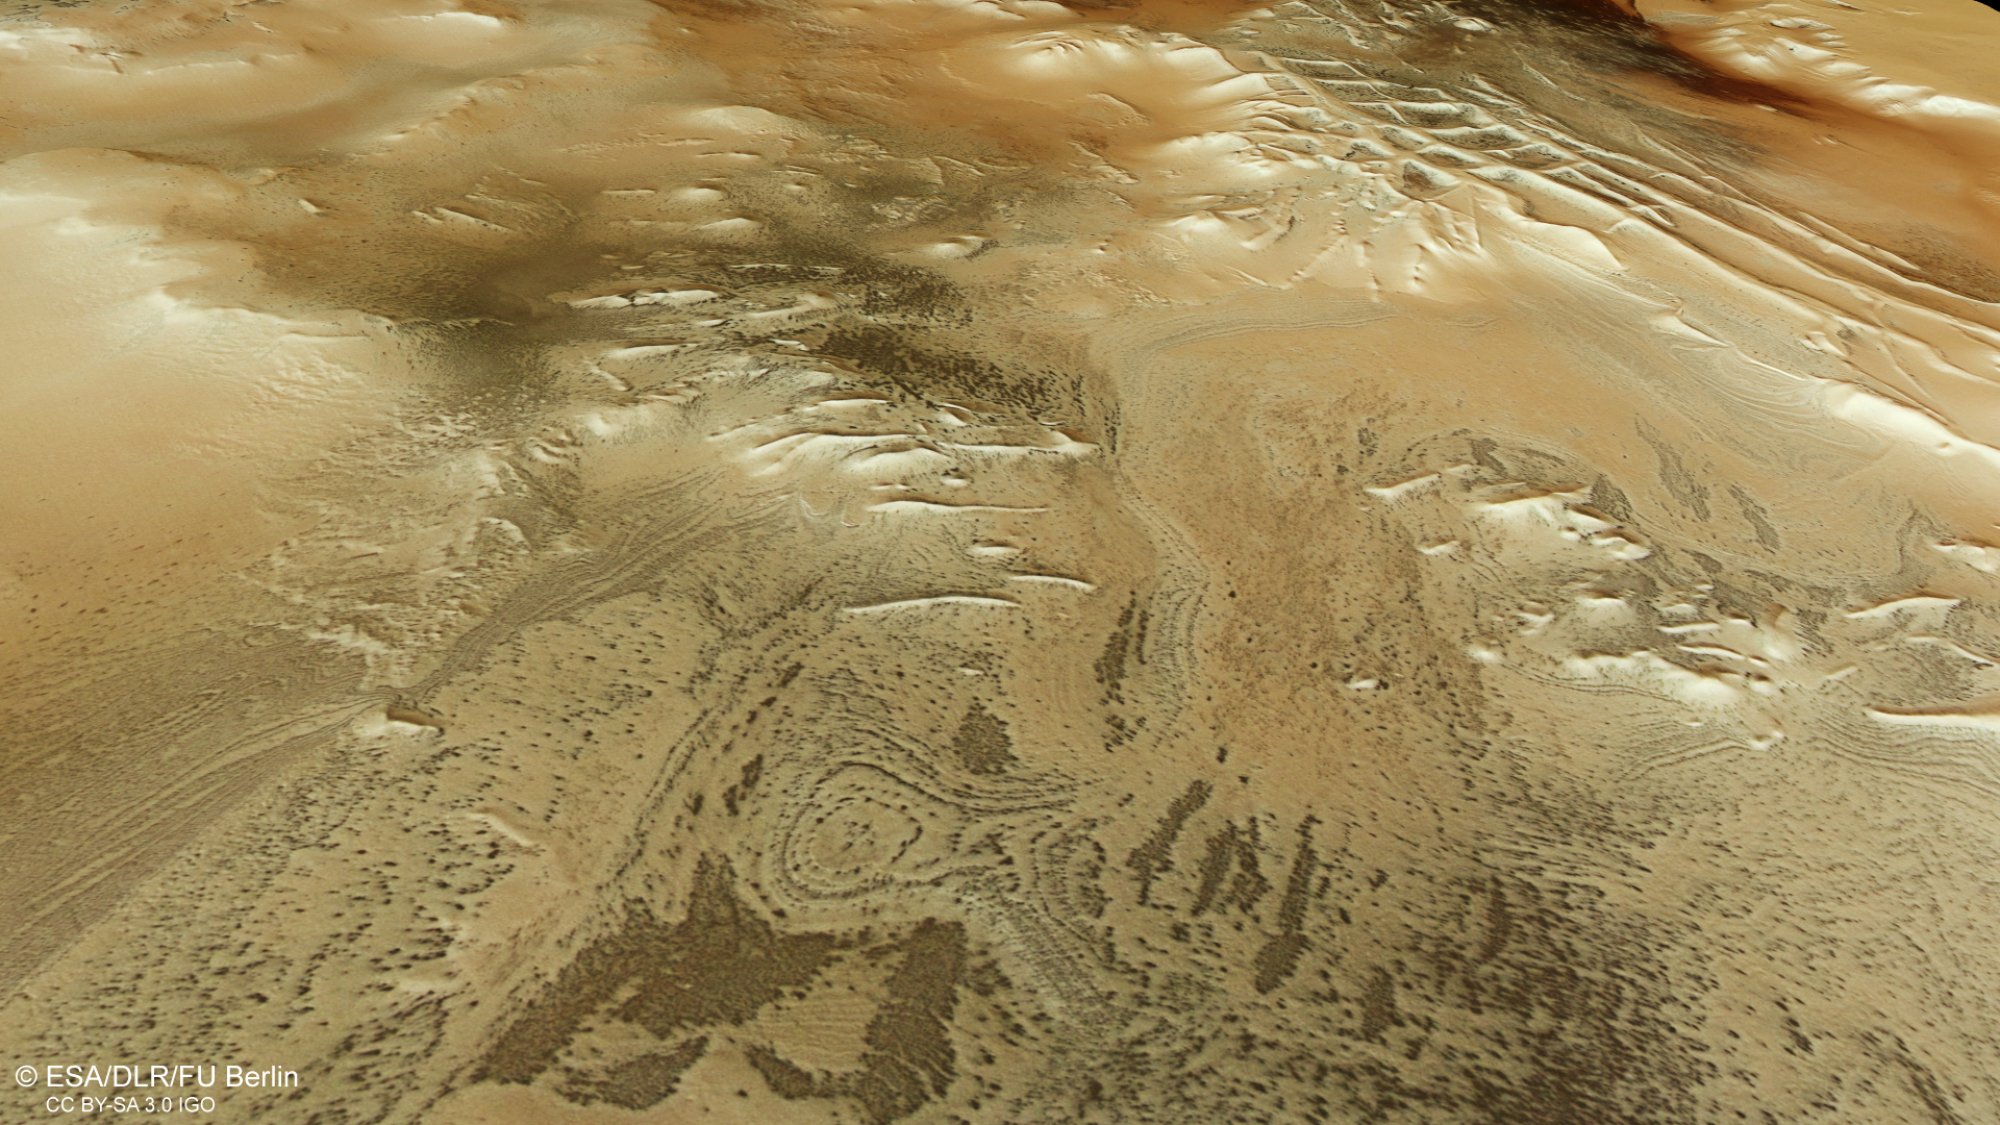 The grid-like ridges of the Angustus Labyrinthus region on Mars.